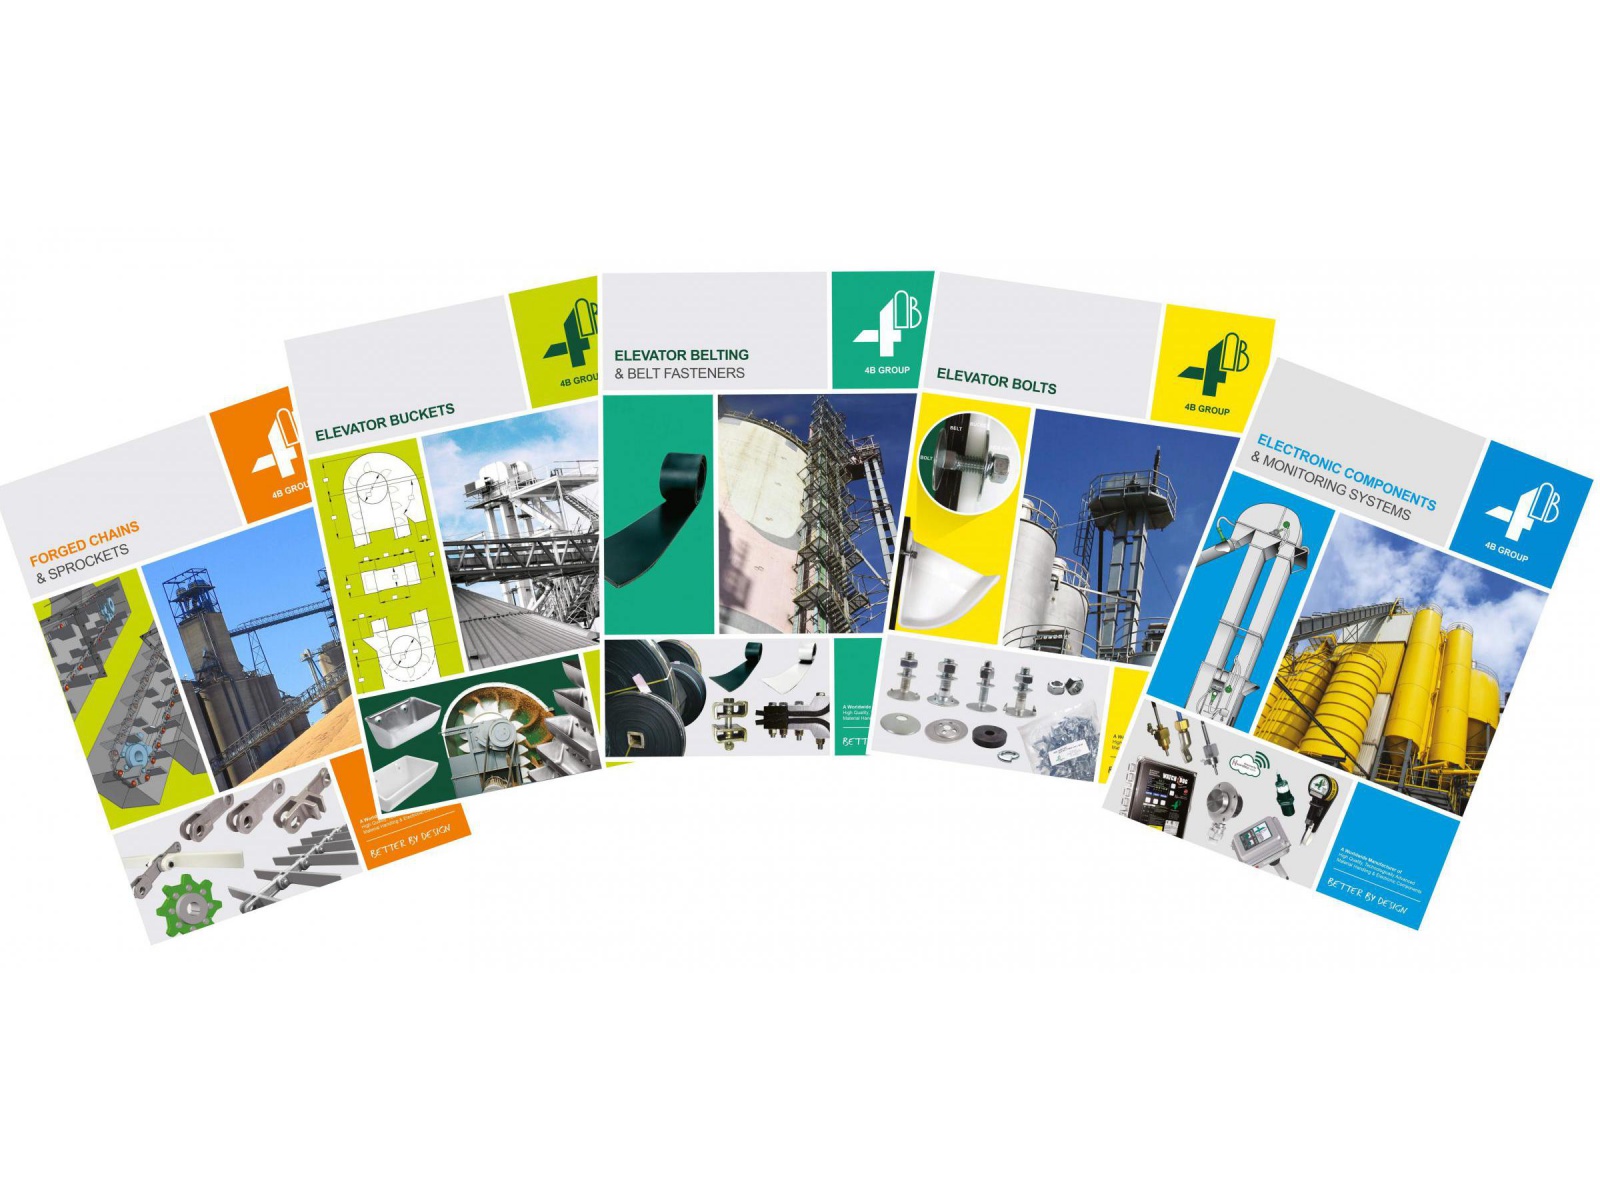 Neue 4B Produktkataloge - Elevator- und Förderkomponenten 4B Deutschland bringt neue Kataloge für Förder- und Überwachungskomponenten heraus